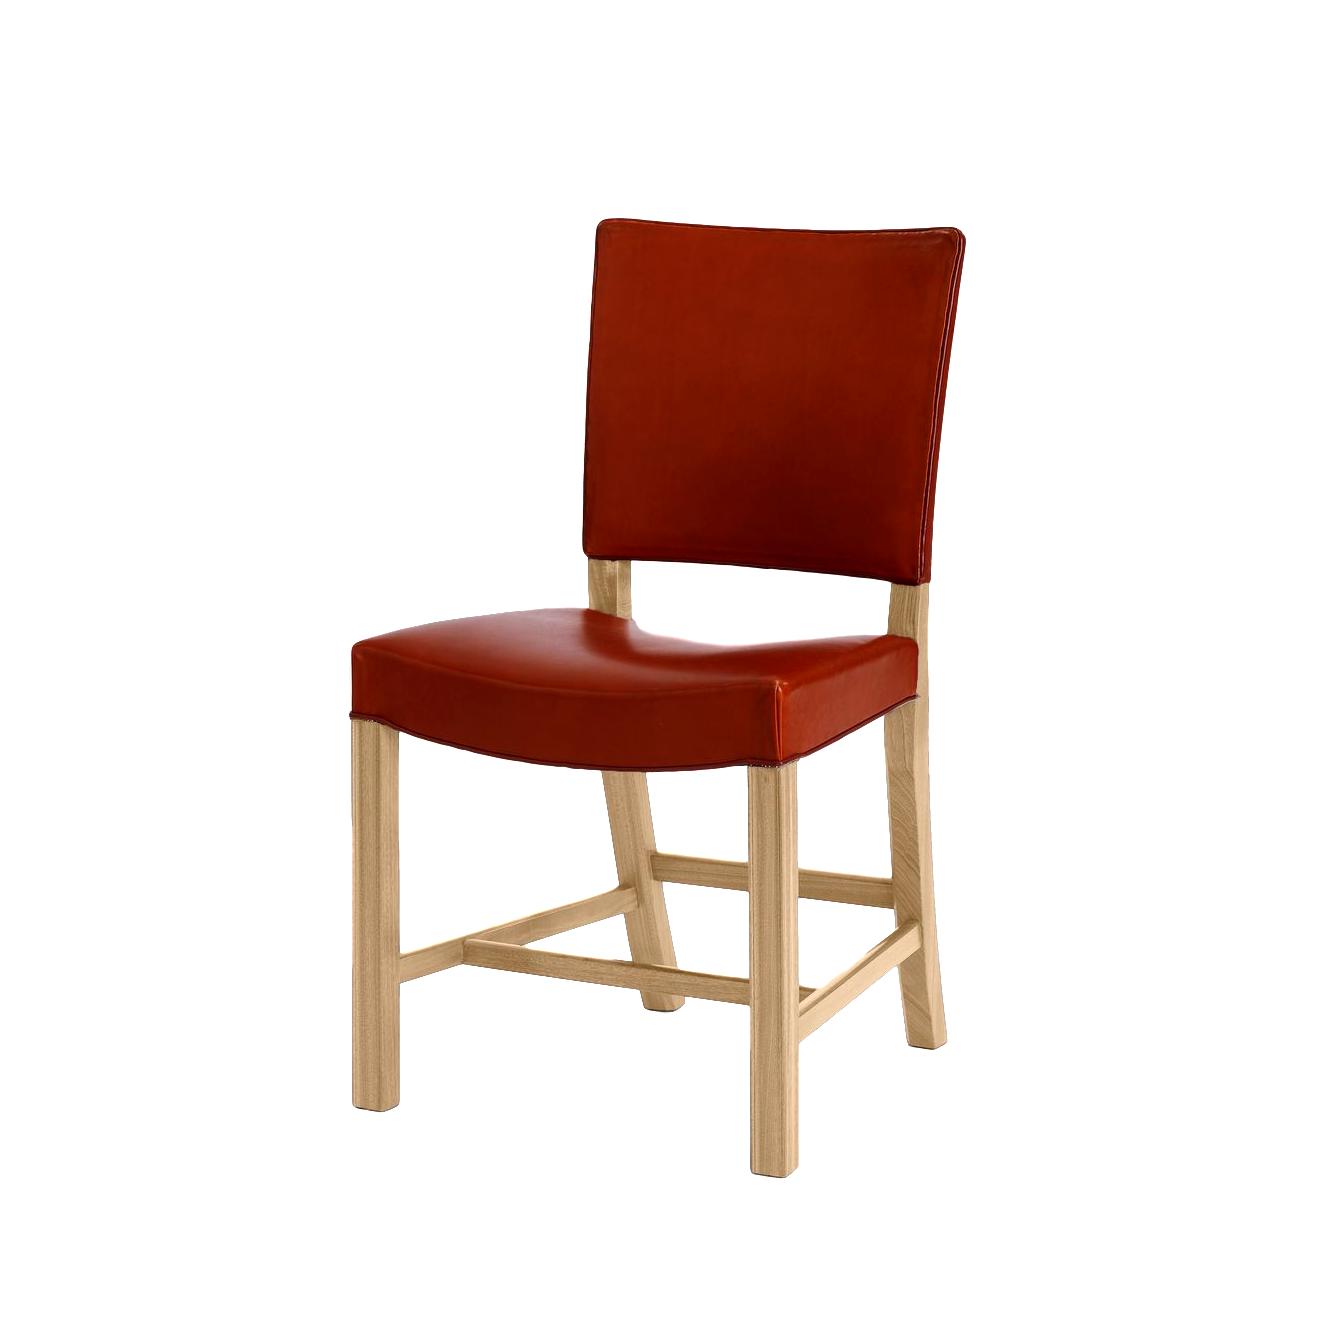 Carl Hansen Den röda stolen, 48 cm